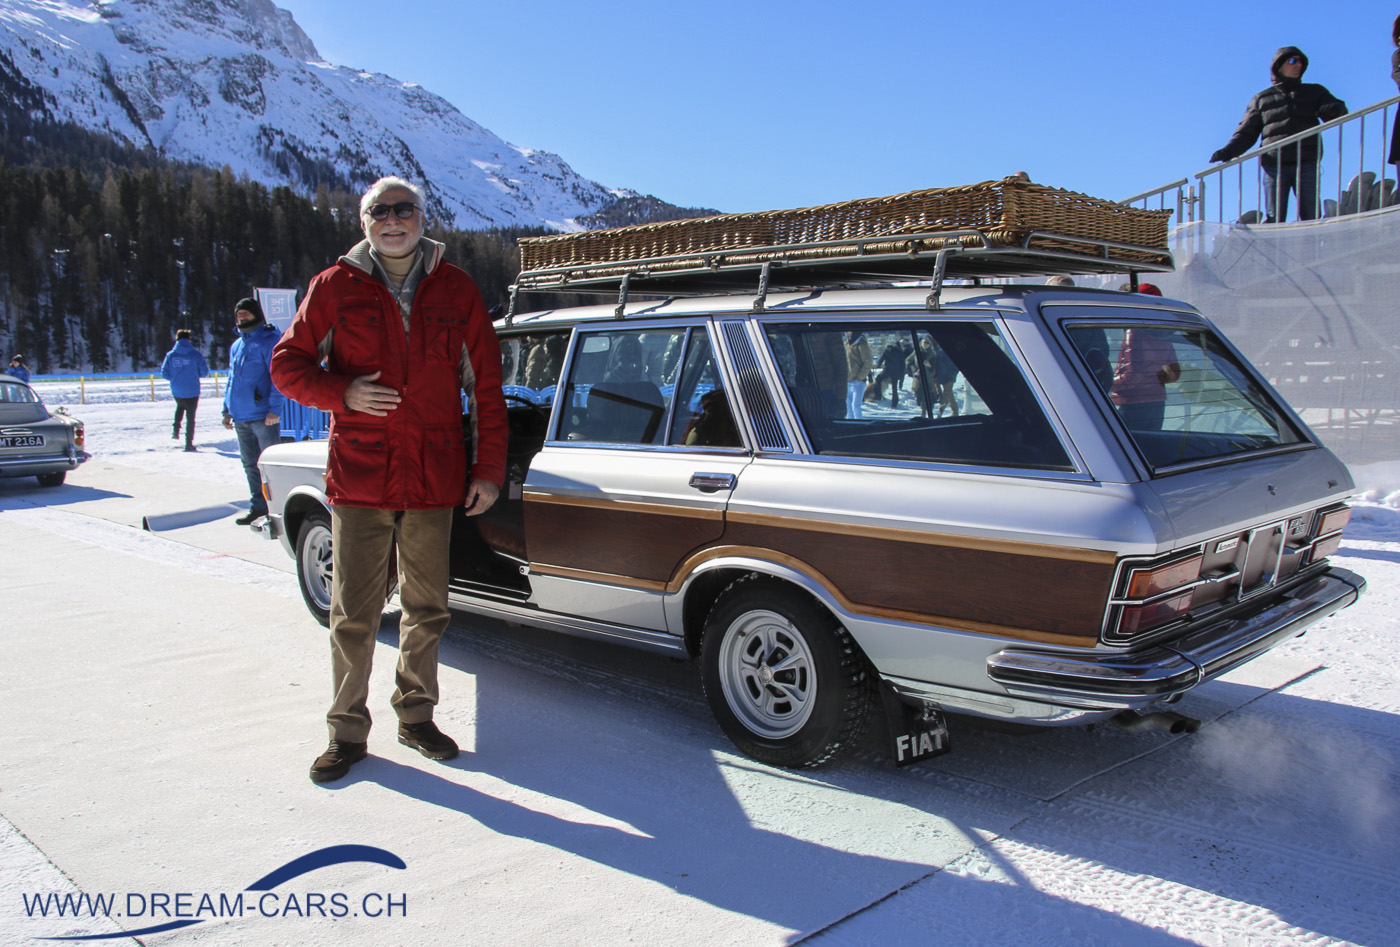 THE ICE, St. Moritz, 26. Februar 2022. Der bekannte italienische Sammler Corrado Lopresto vor seinem Fiat 130 'Villa d'Este' Introzzi